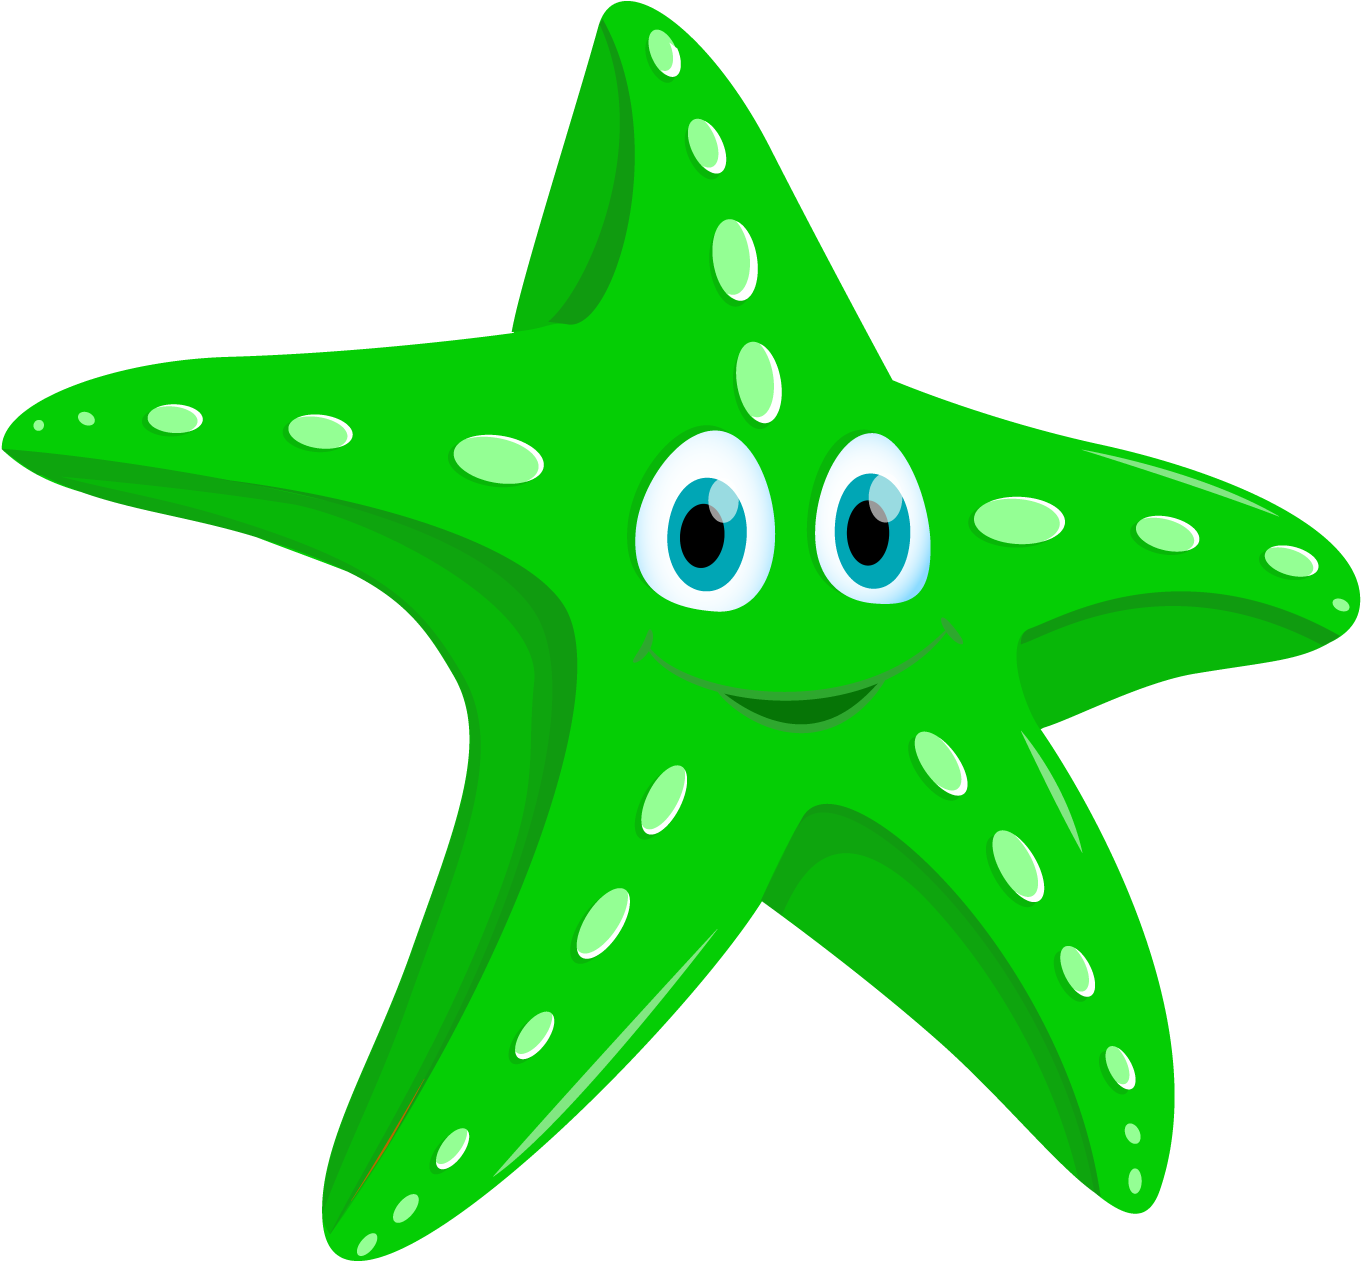 Starfish (1500x1500)